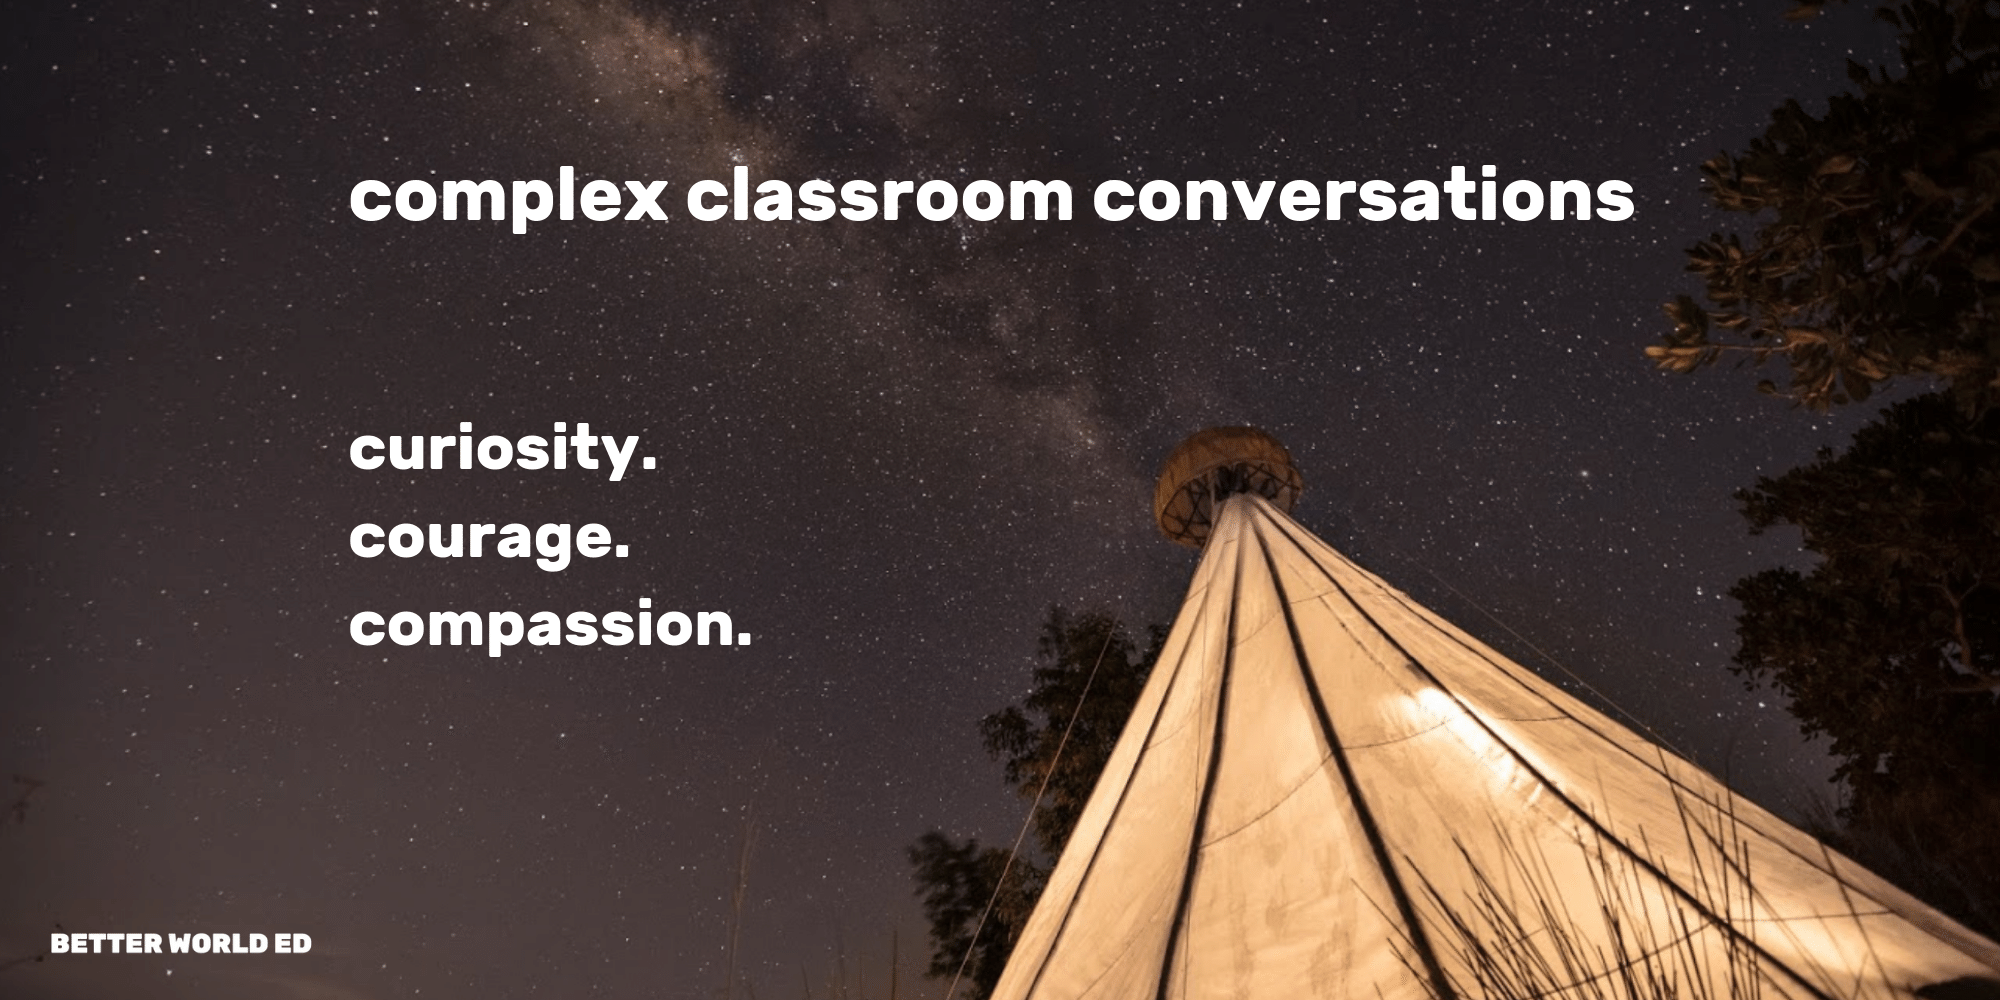 Having Complex Classroom Conversations